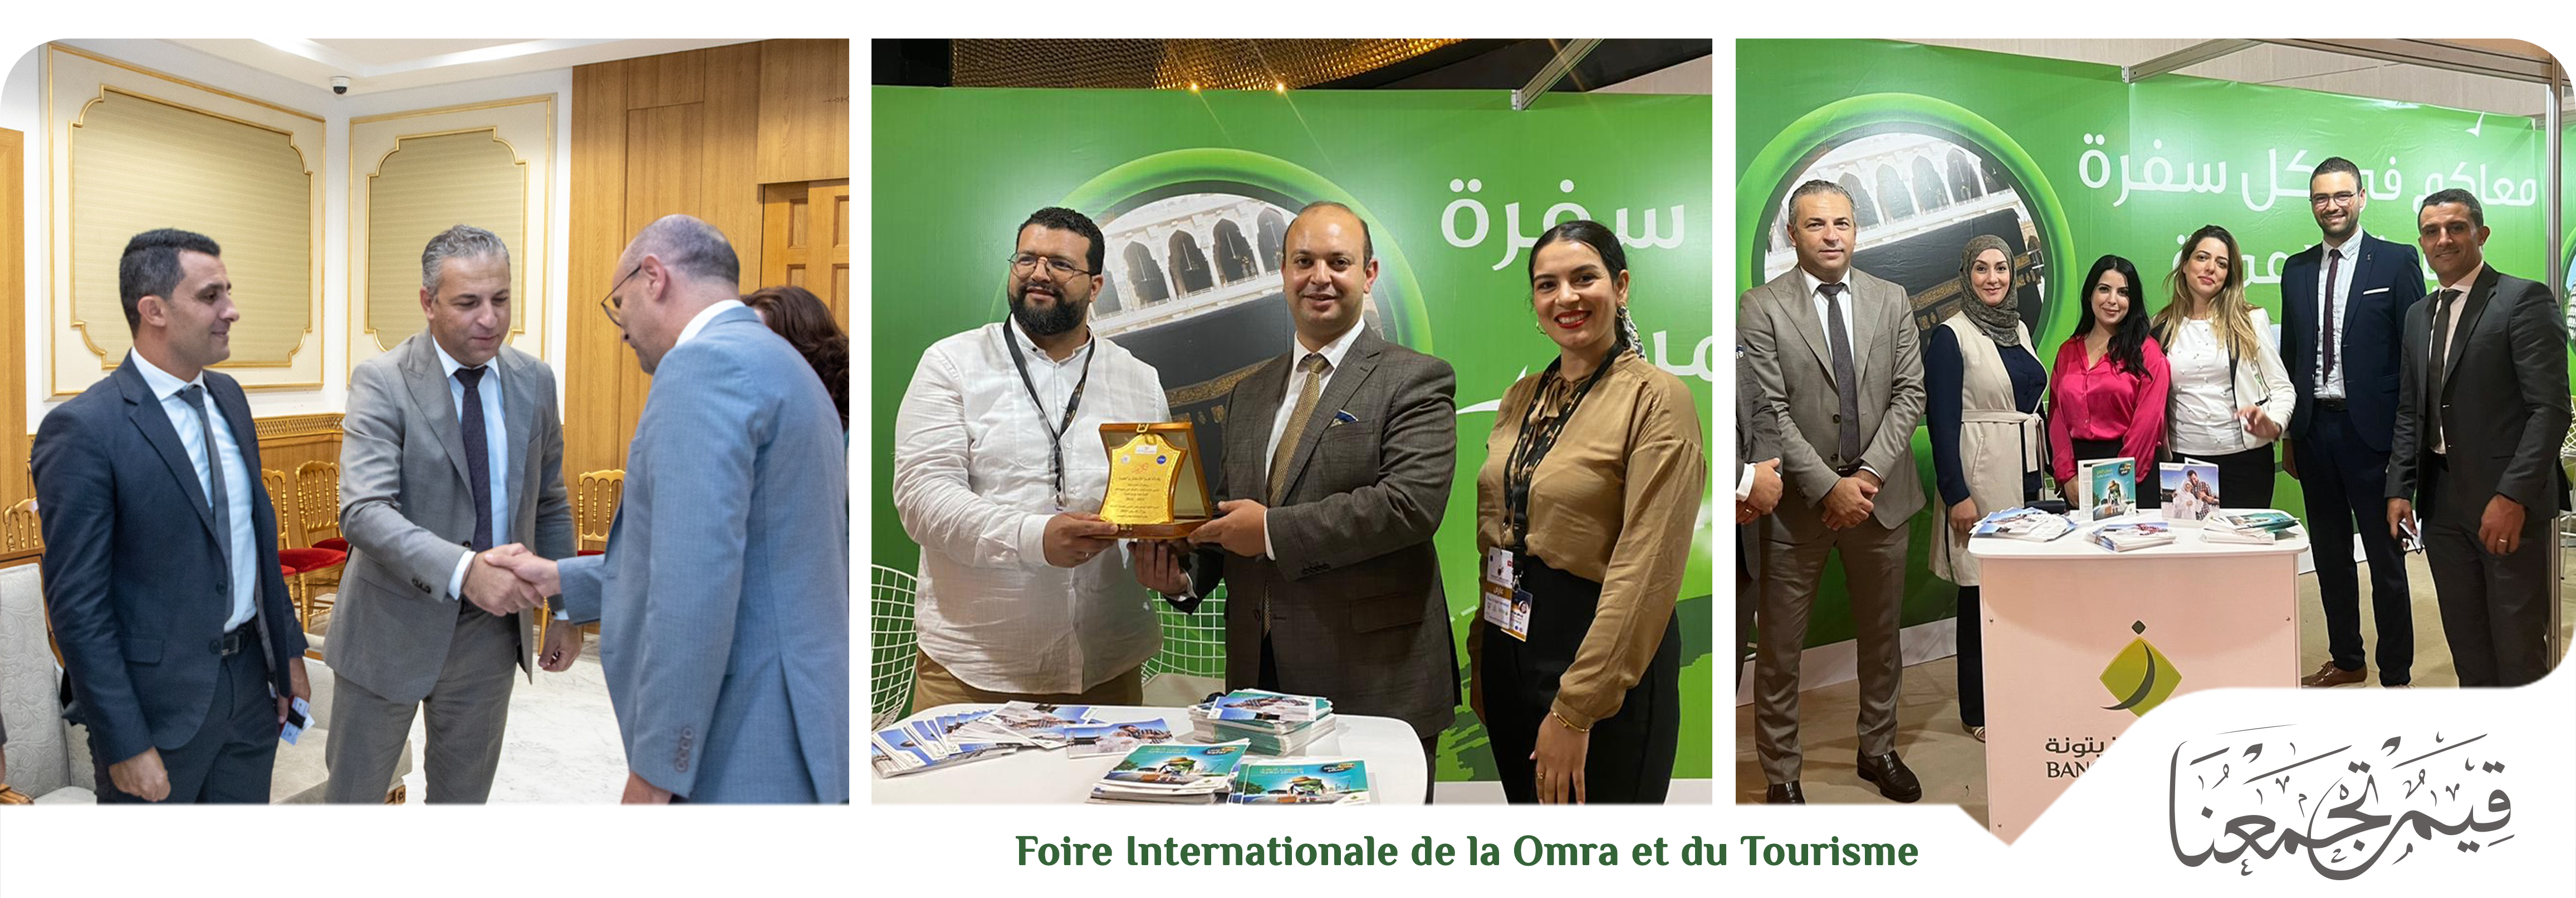 Banque Zitouna, sponsor de la Foire internationale de la Omra et du tourisme